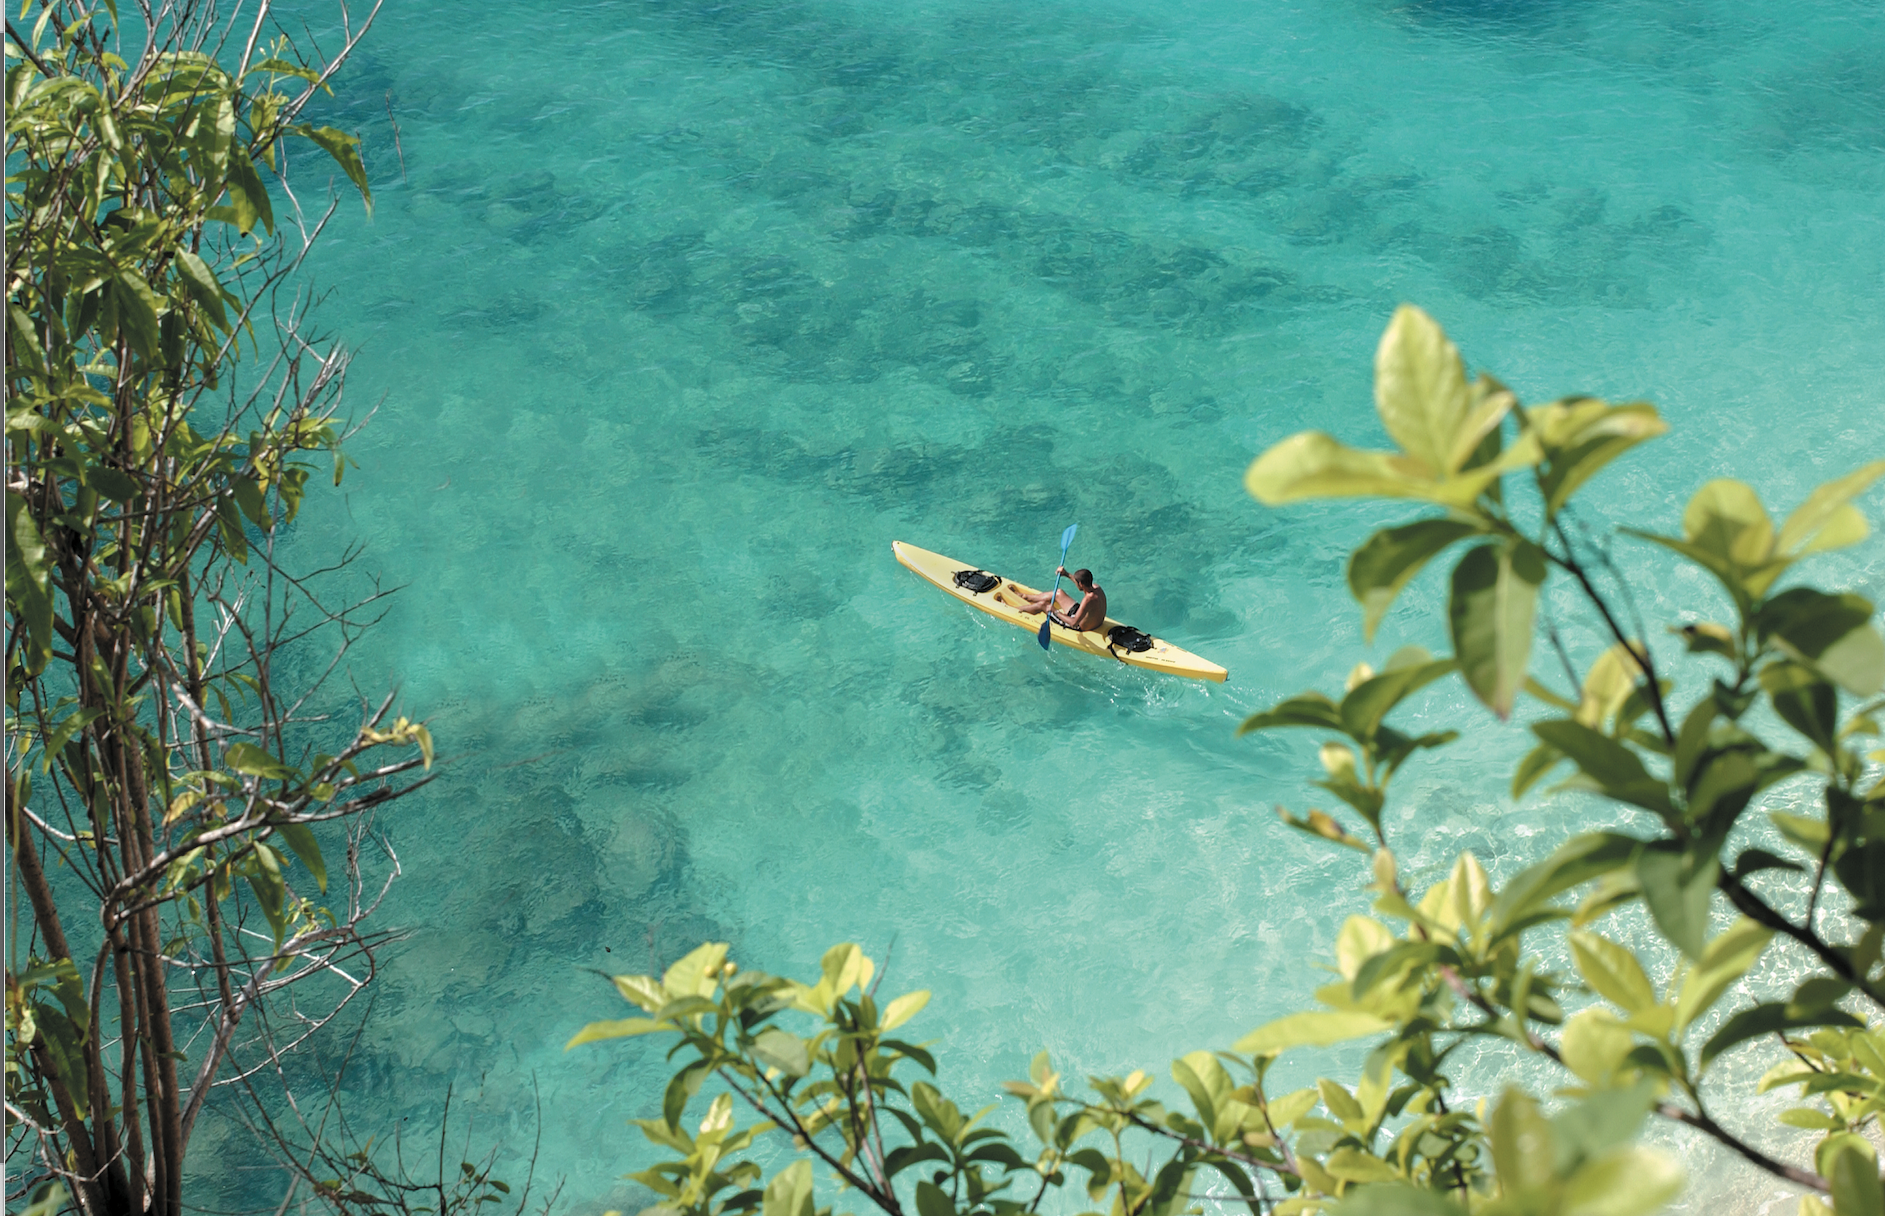   Sea kayaking at Belmond La Samanna (photo credit: Belmond)  